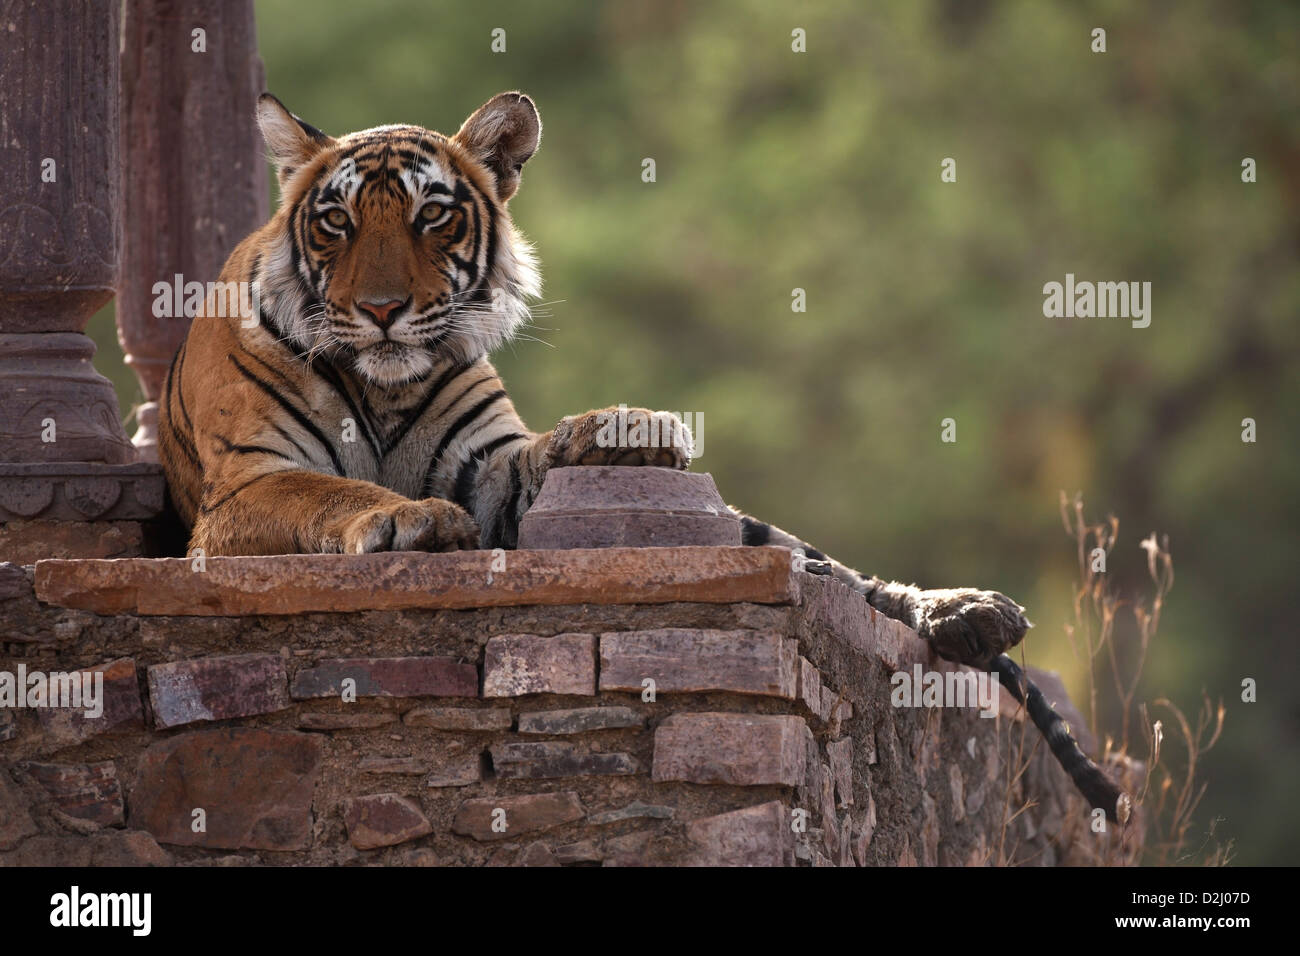 Tigre du Bengale sauvage, Panthera tigris, situé dans le temple, parc national de Ranthambore, Inde Banque D'Images